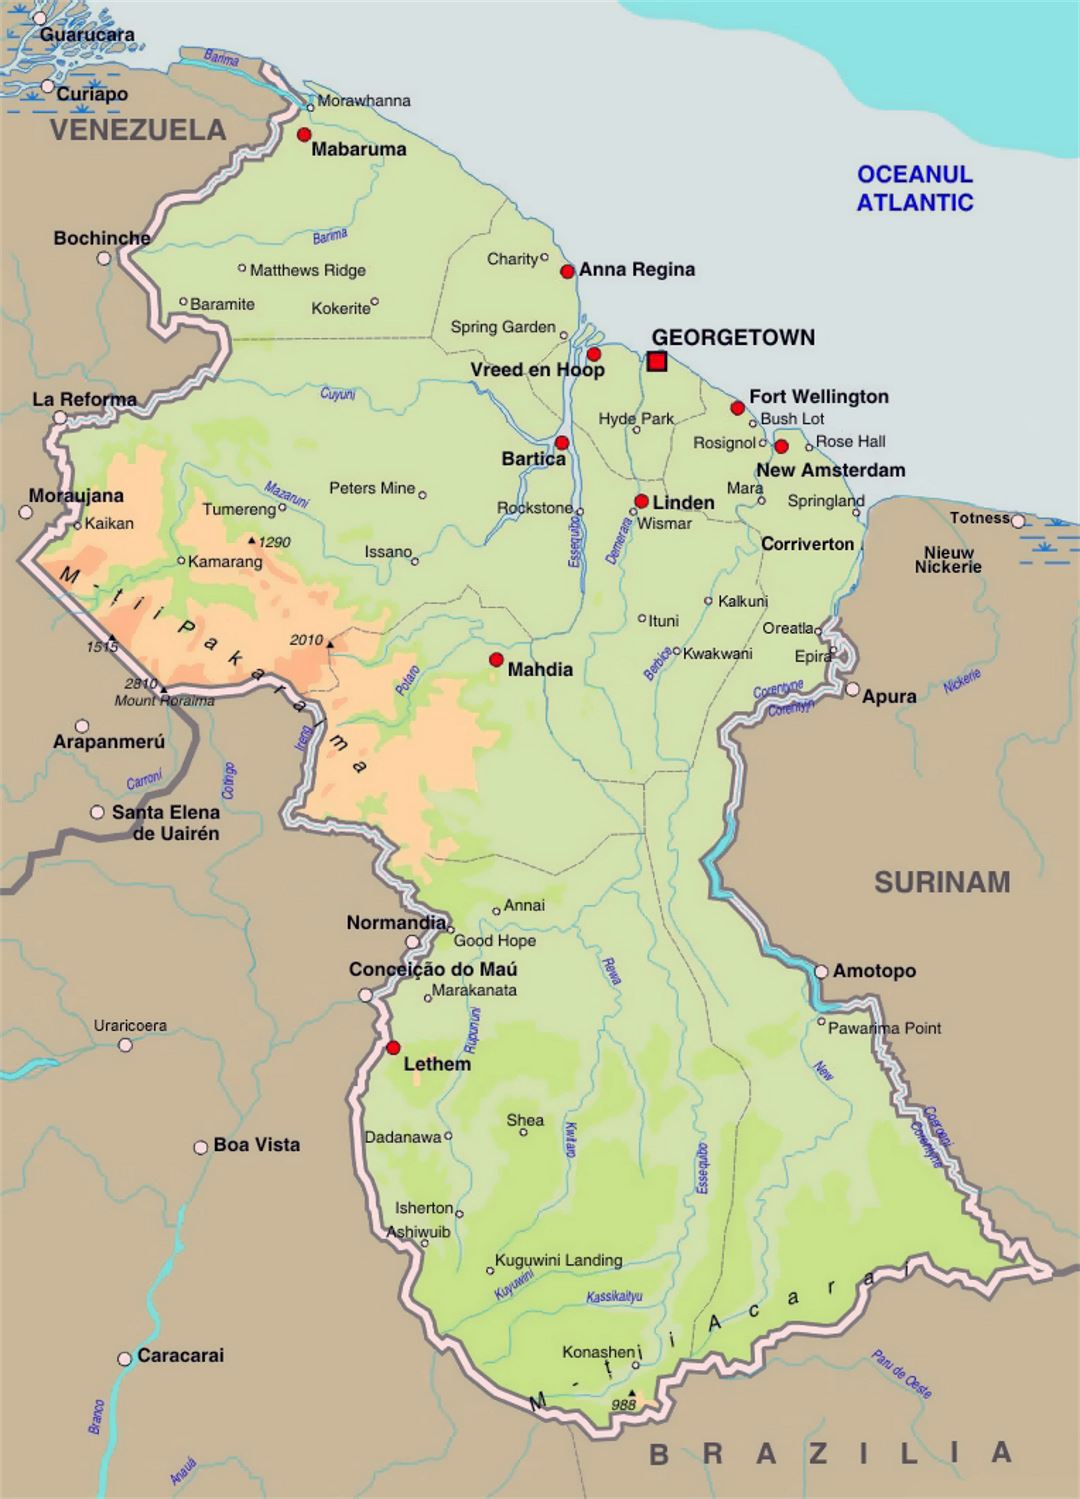 Подробная карта высот Гайаны с дорогами и городами